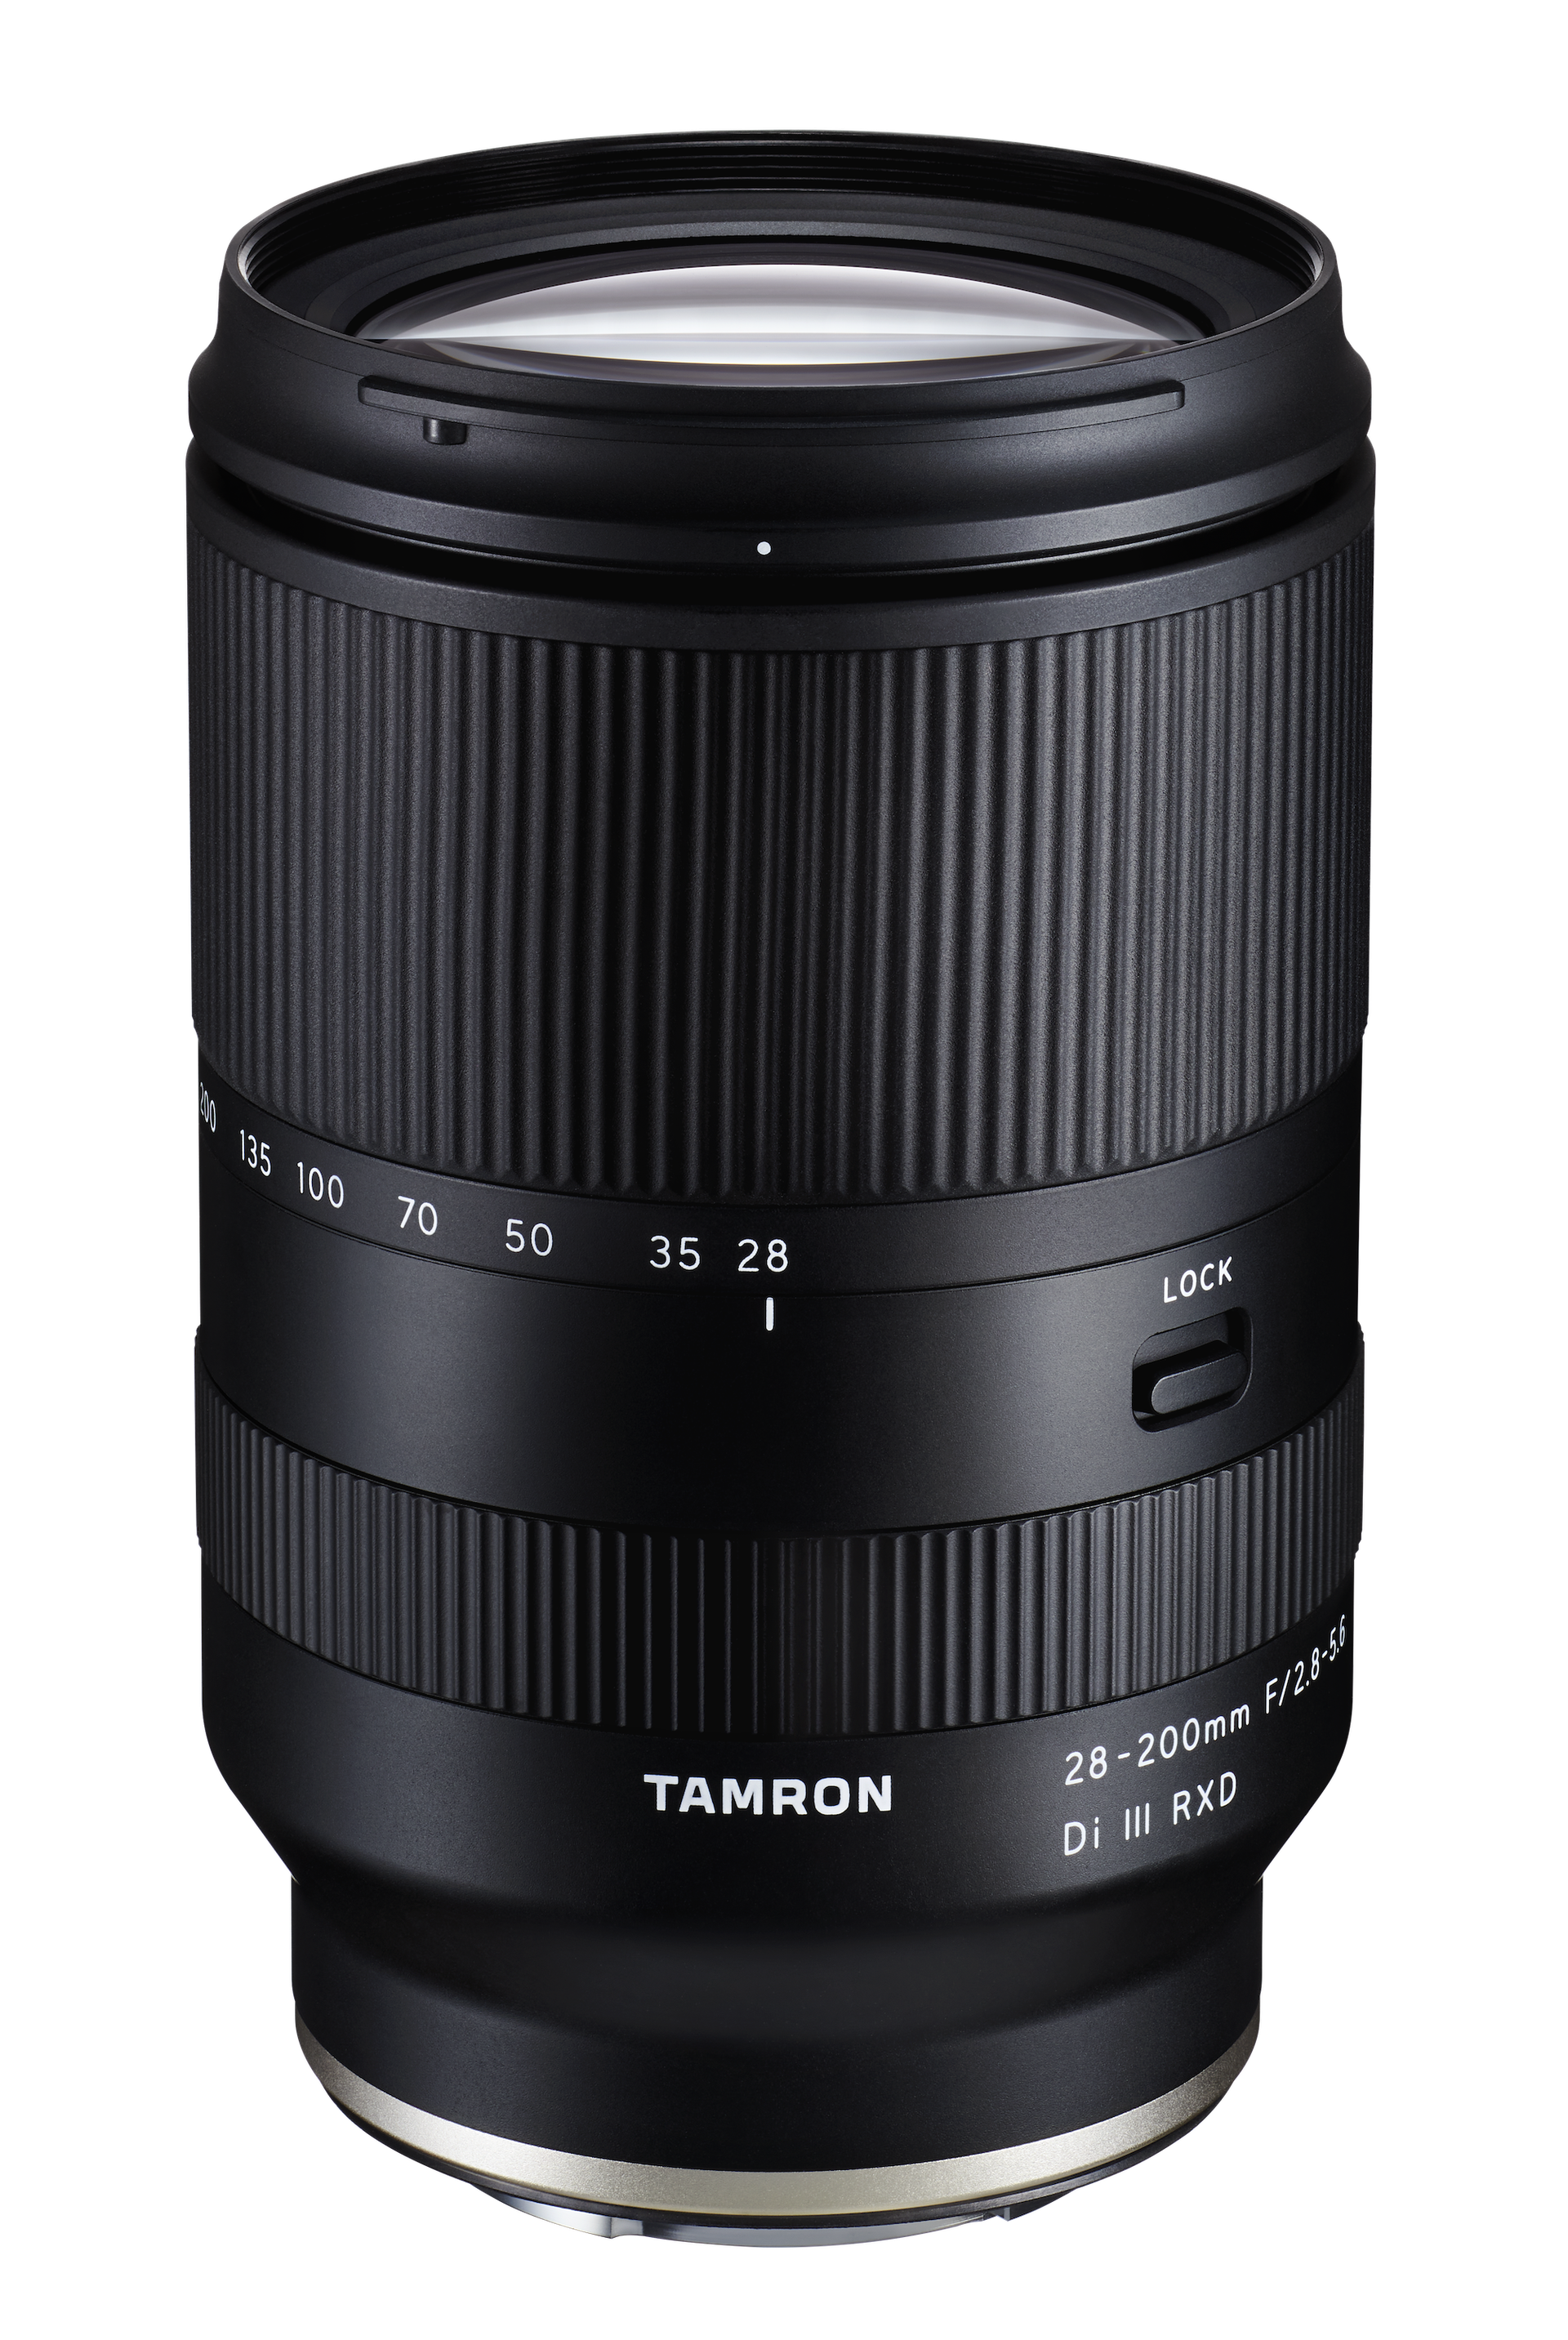 Tamron 28-200mm F/2.8-5.6 Di III RXD -Garanzia Polyphoto 5 anni - Cine Sud è da 45 anni sul mercato!